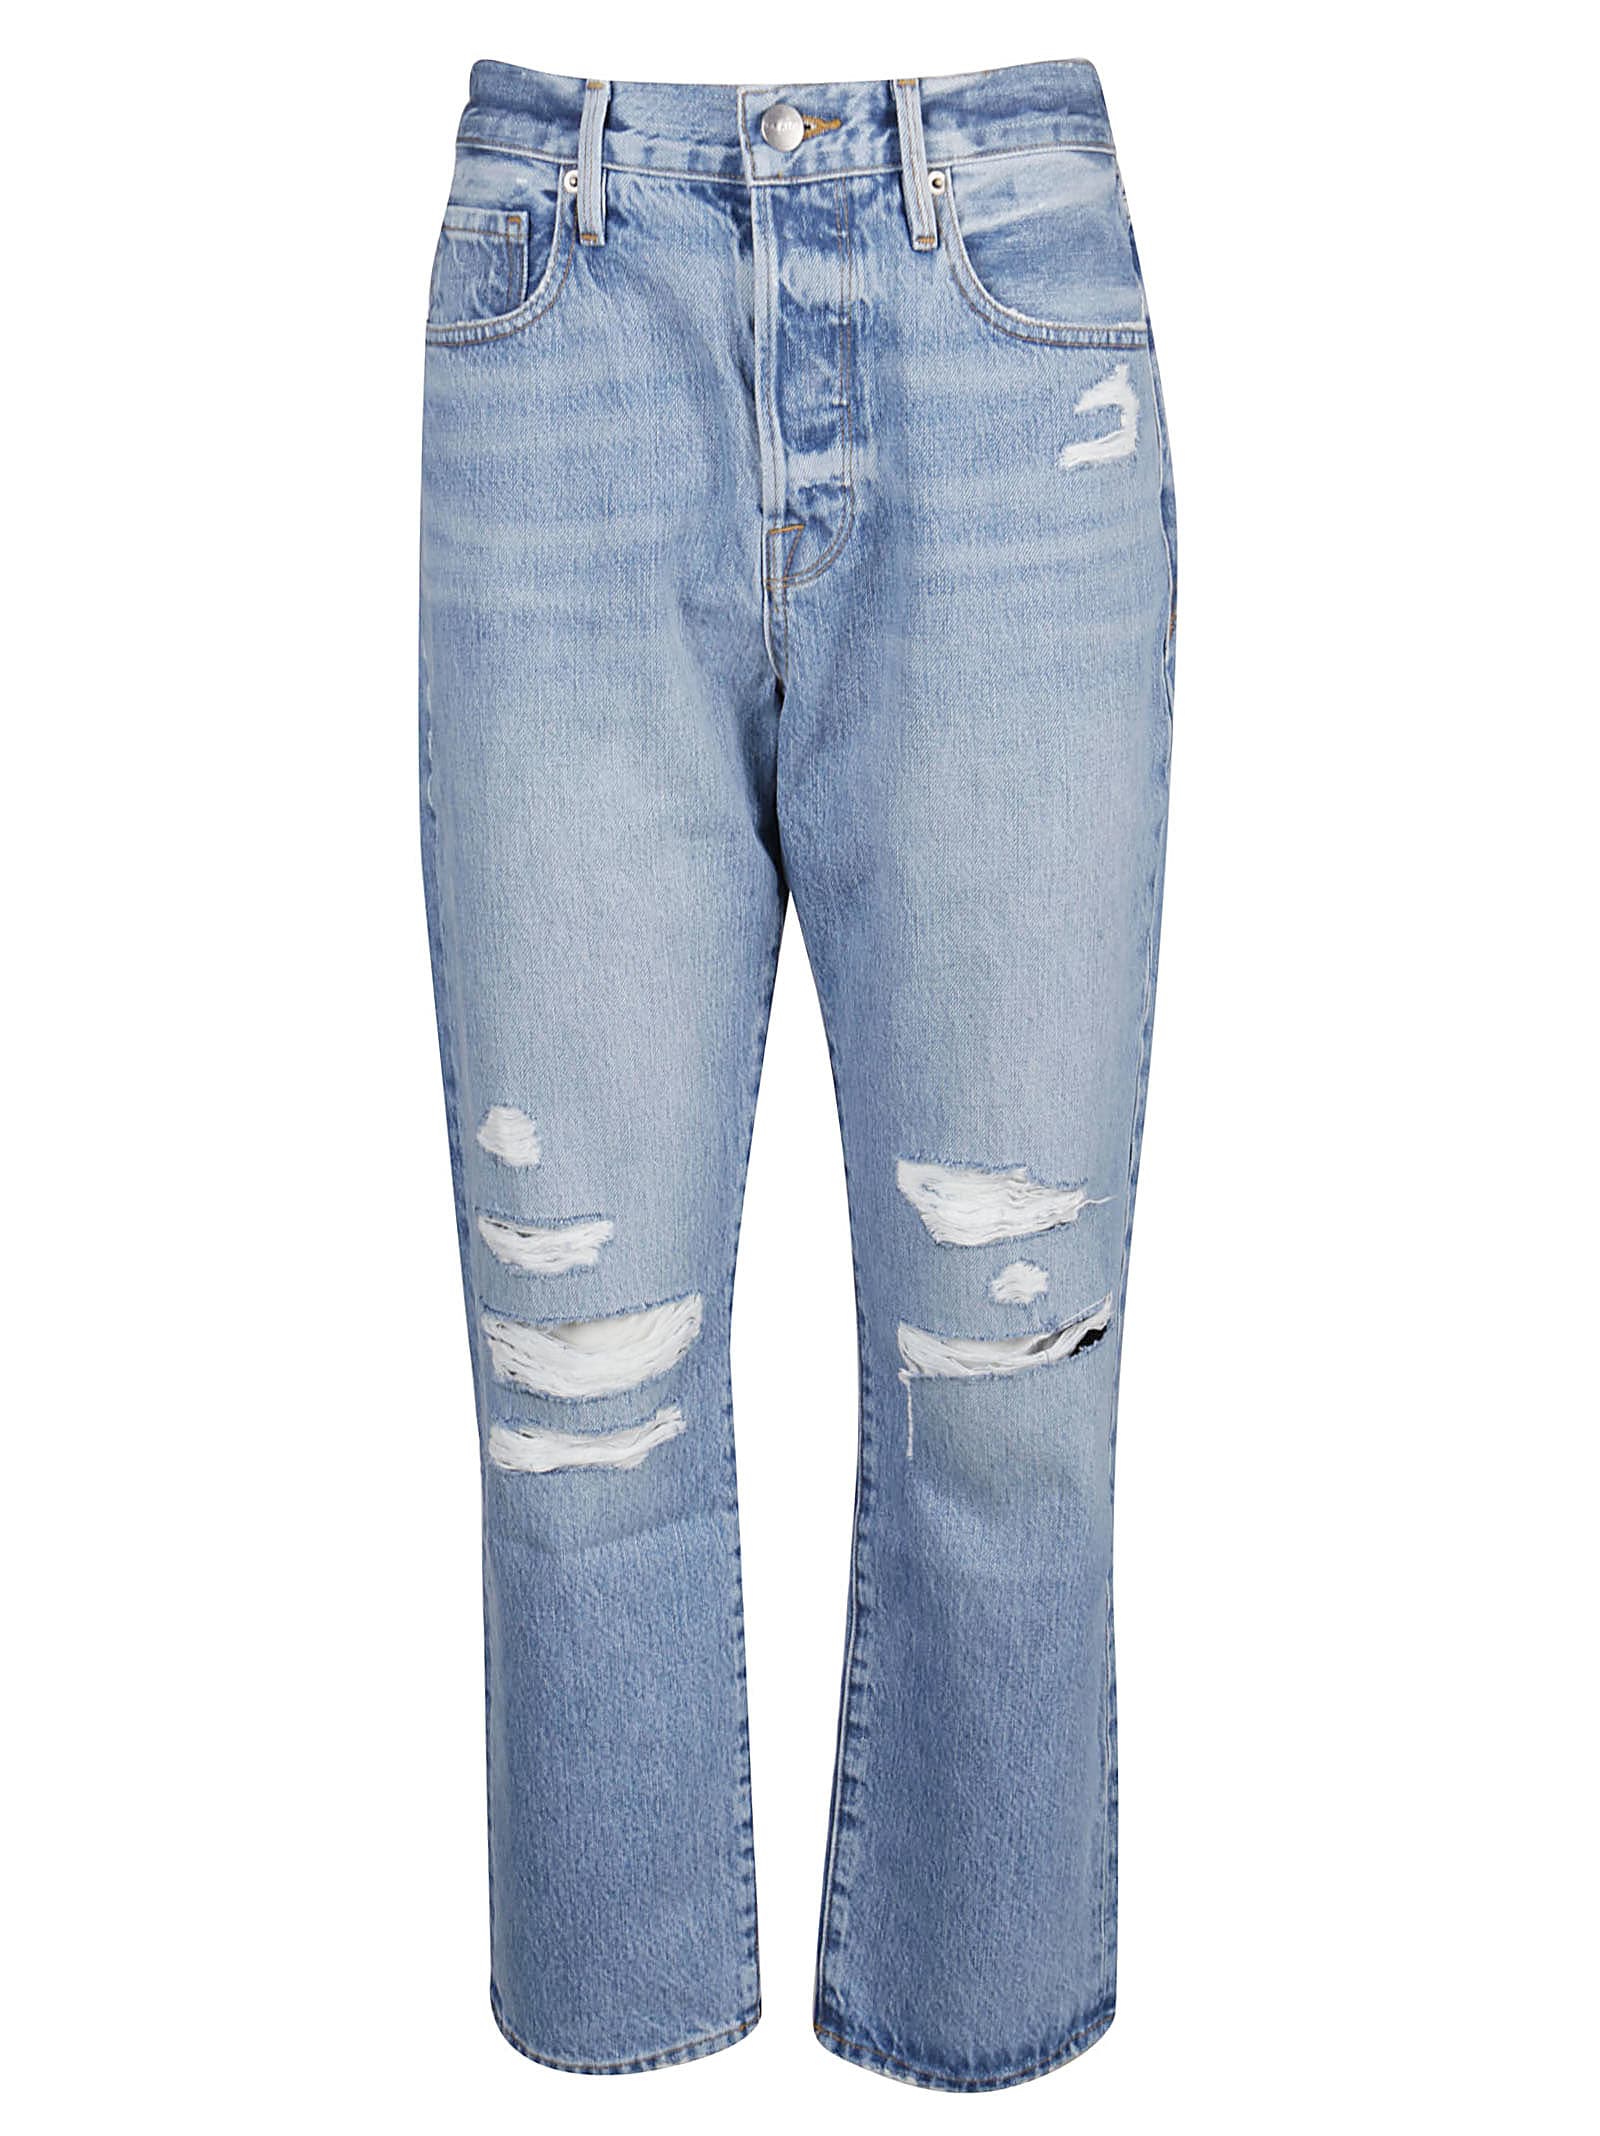 frame jeans sale